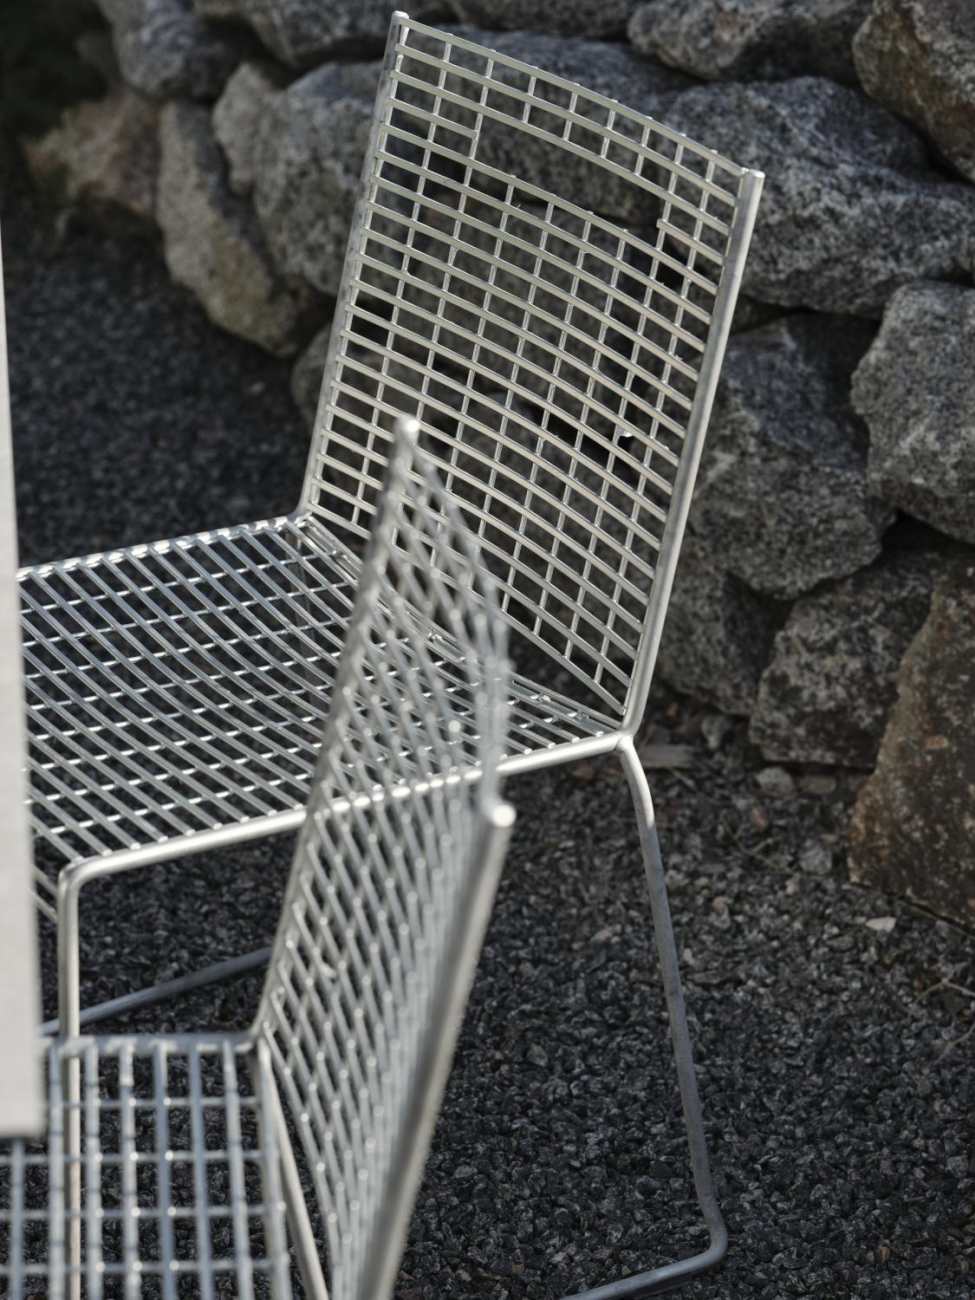 Der Gartenstuhl Sinarp überzeugt mit seinem modernen Design. Gefertigt wurde er aus Metall, welches einen silbernen Farbton besitzt. Das Gestell ist auch aus Metall und hat eine silberne Farbe. Die Sitzhöhe des Stuhls beträgt 44 cm.